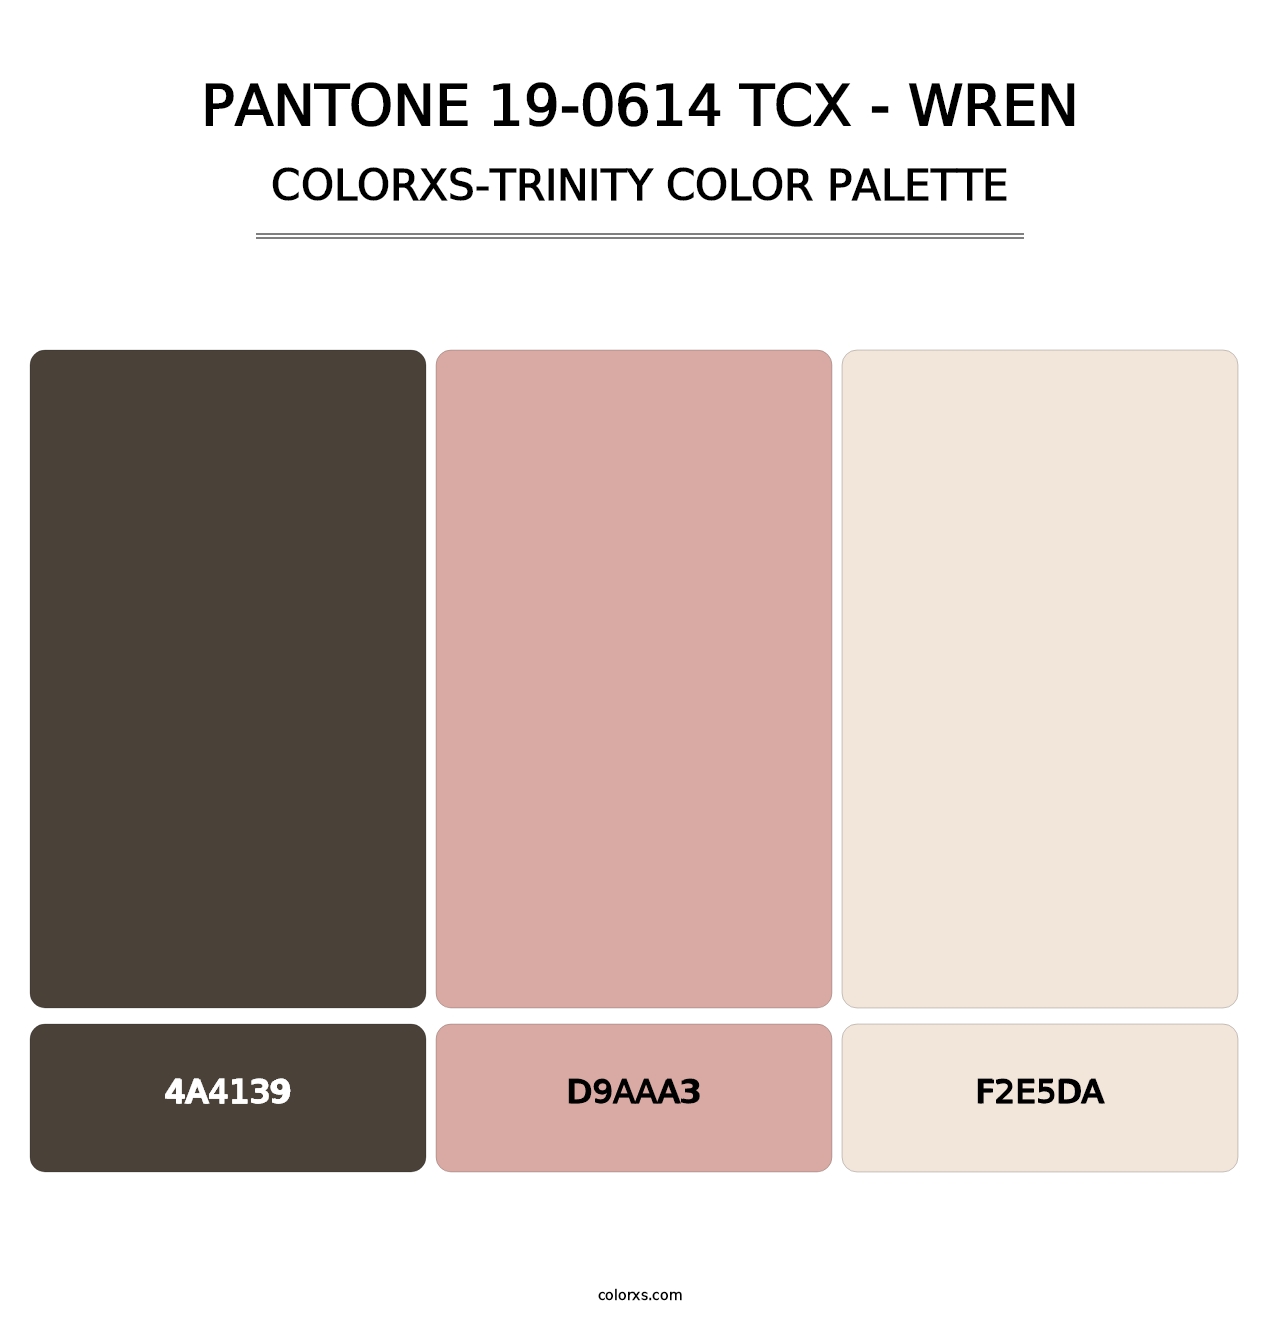 PANTONE 19-0614 TCX - Wren - Colorxs Trinity Palette